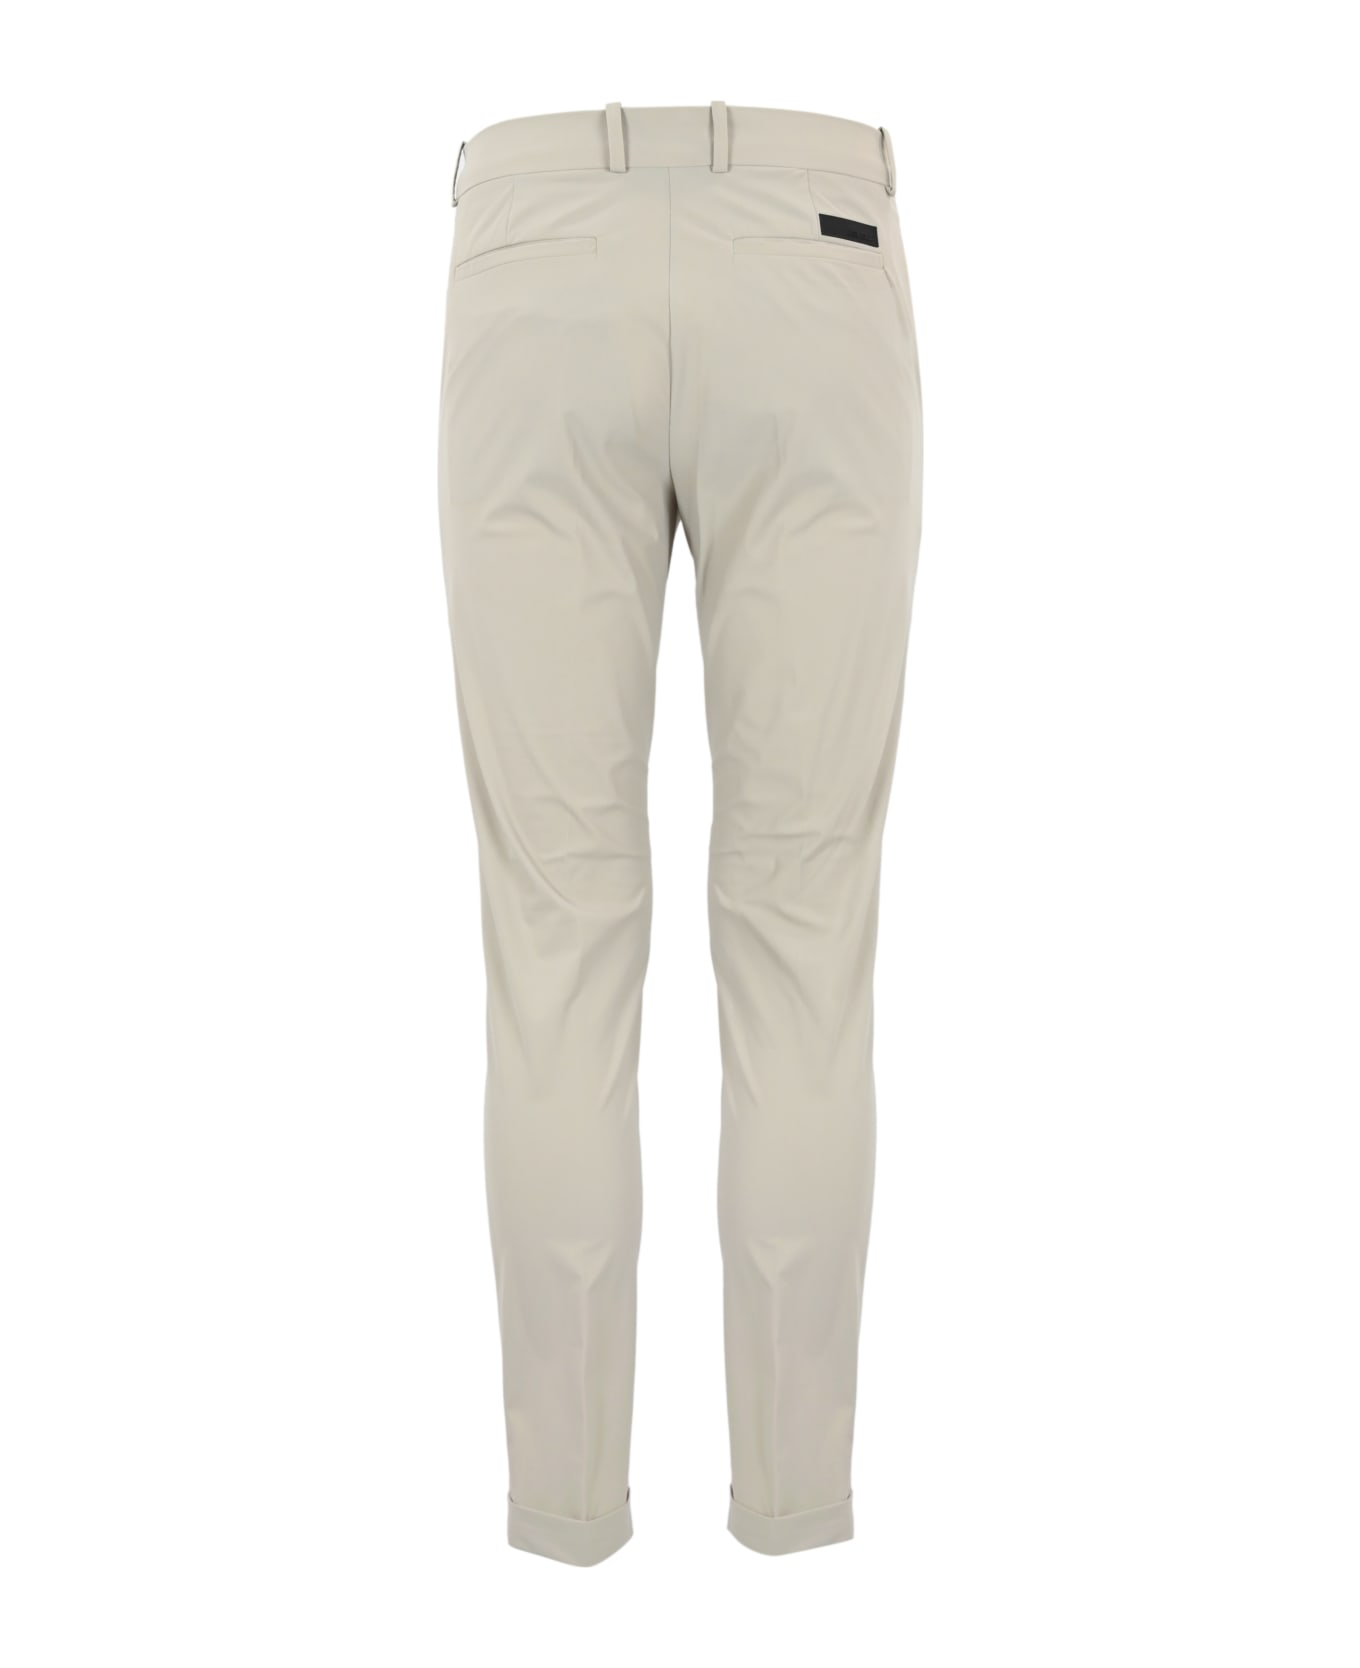 RRD - Roberto Ricci Design Chino Trousers In Technical Fabric - White sand